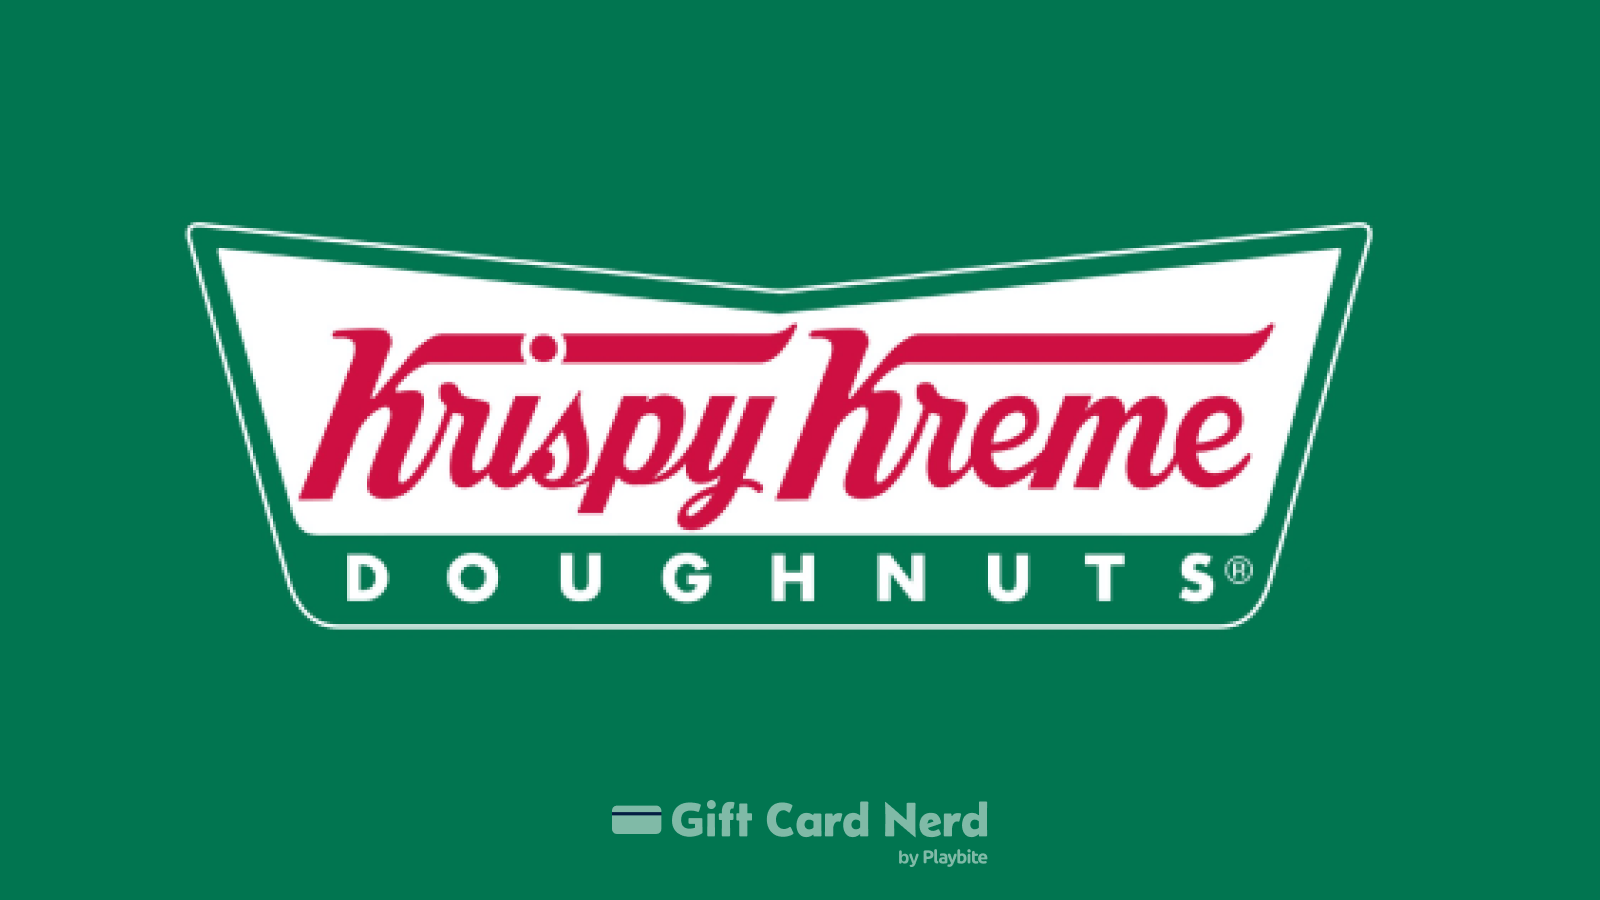 Where to Buy Krispy Kreme Gift Cards